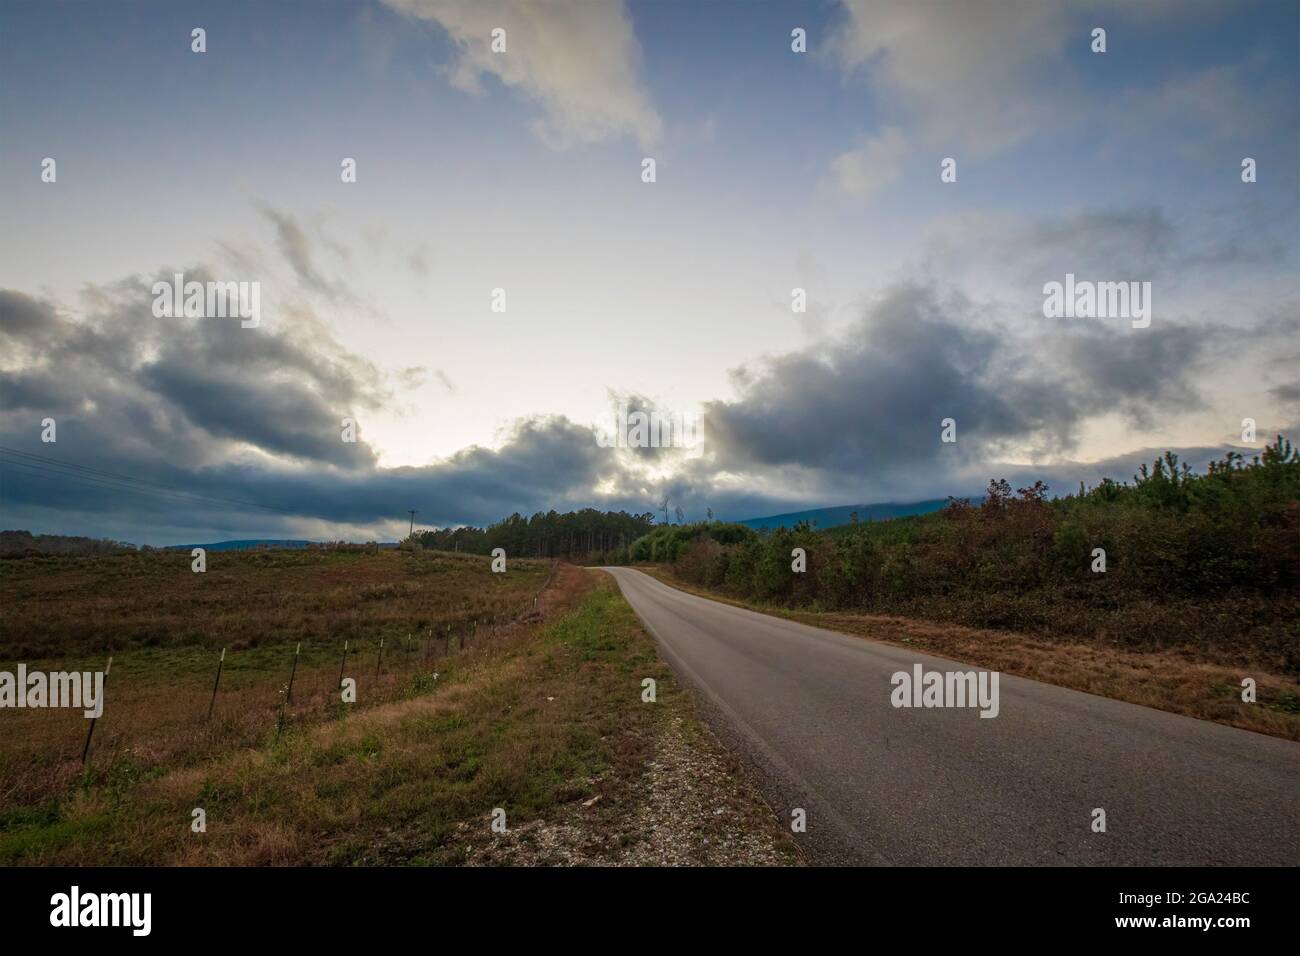 Imagen de fondo de un camino rural vacío que conduce a la distancia con luz que se desvanece detrás de grandes nubes. Foto de stock